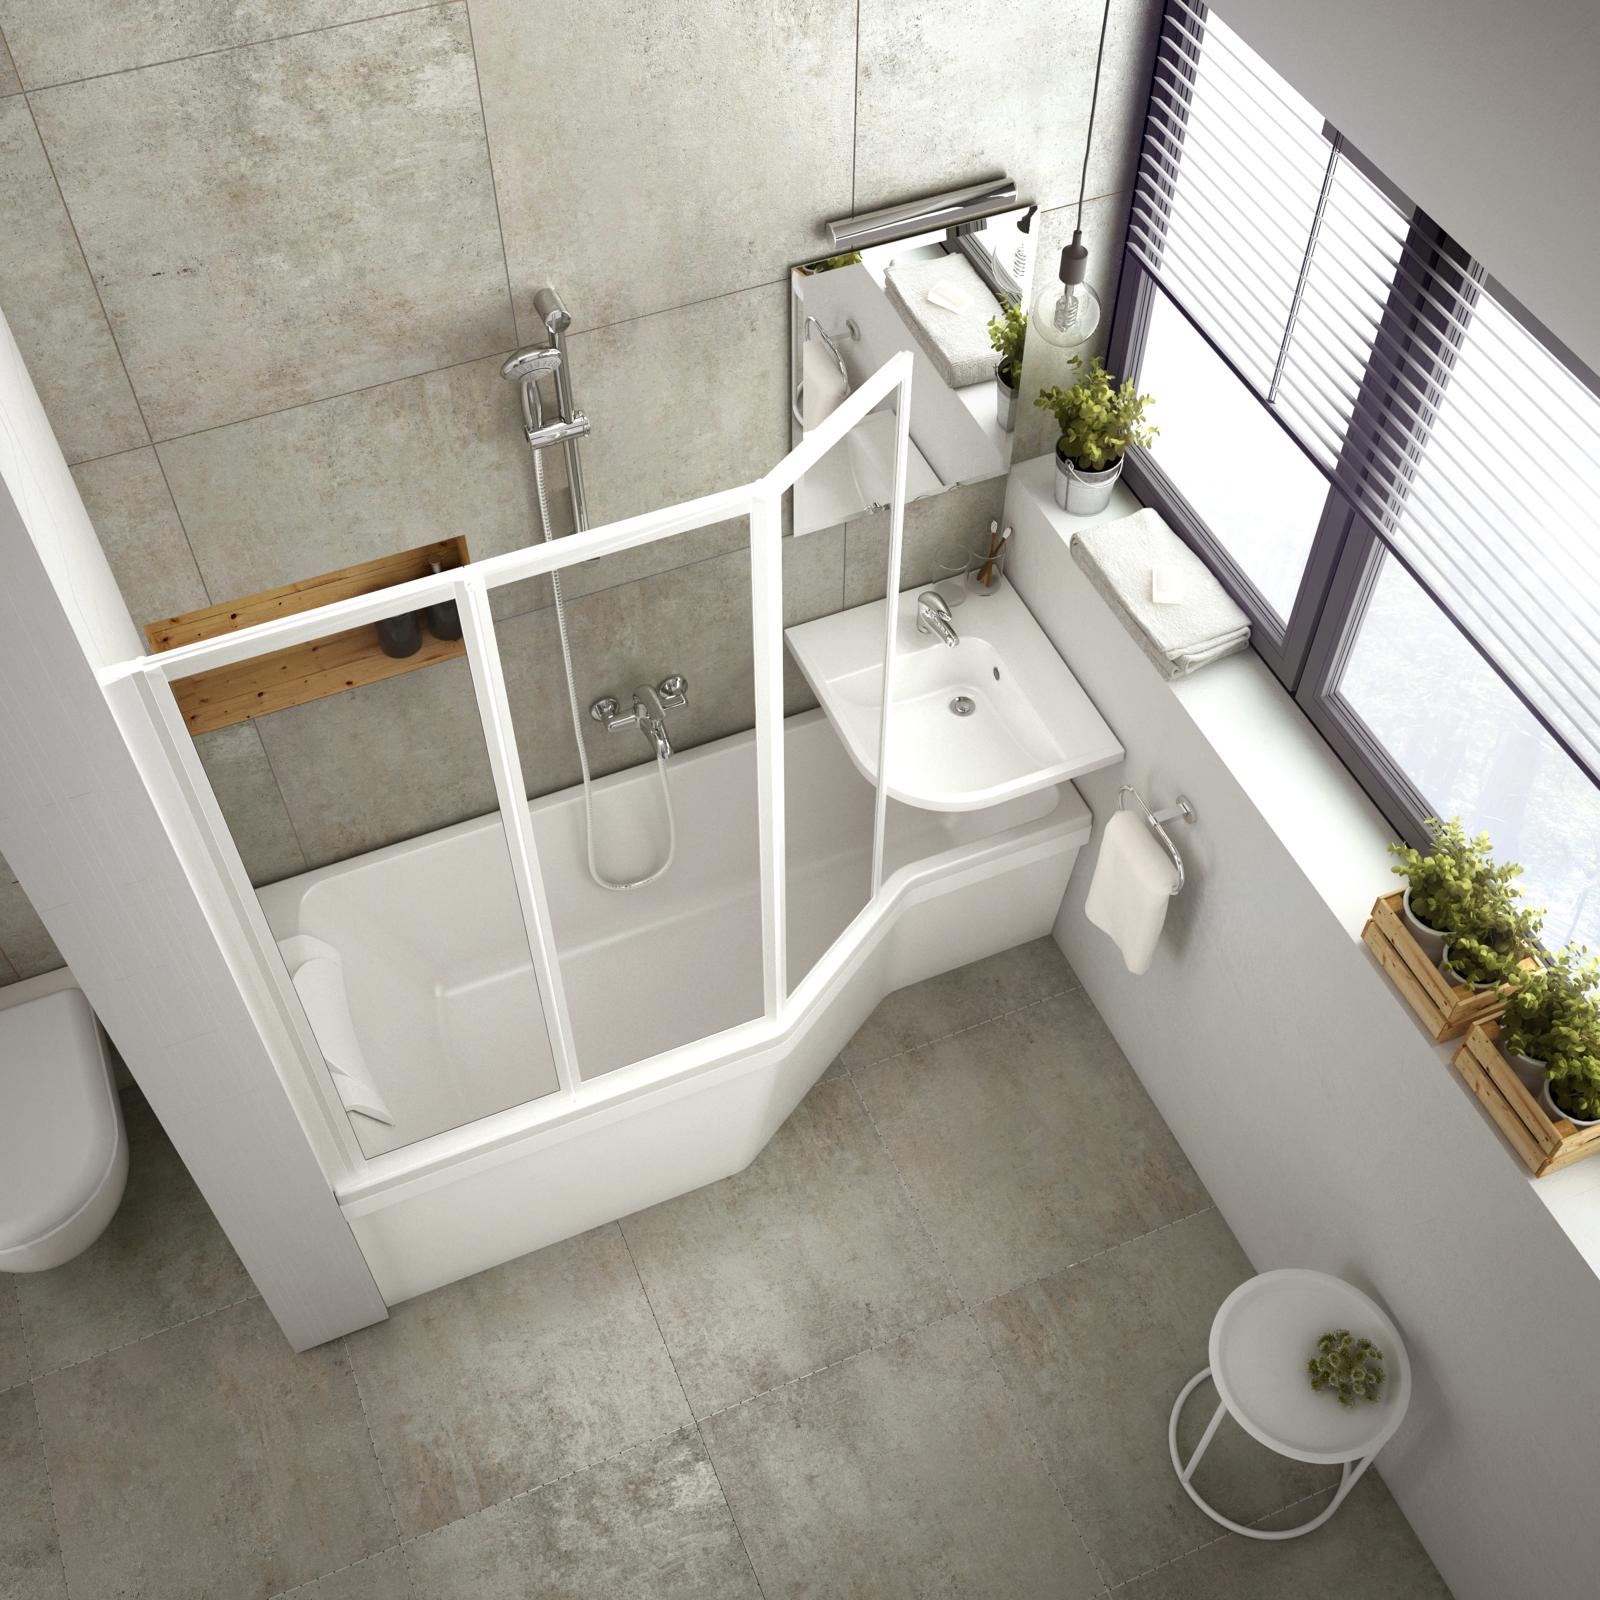 A BeHappy fürdőszoba koncepció kis fürdőszobába alkalmas kád, zuhanyzó, mosdó megoldásokat kínál.